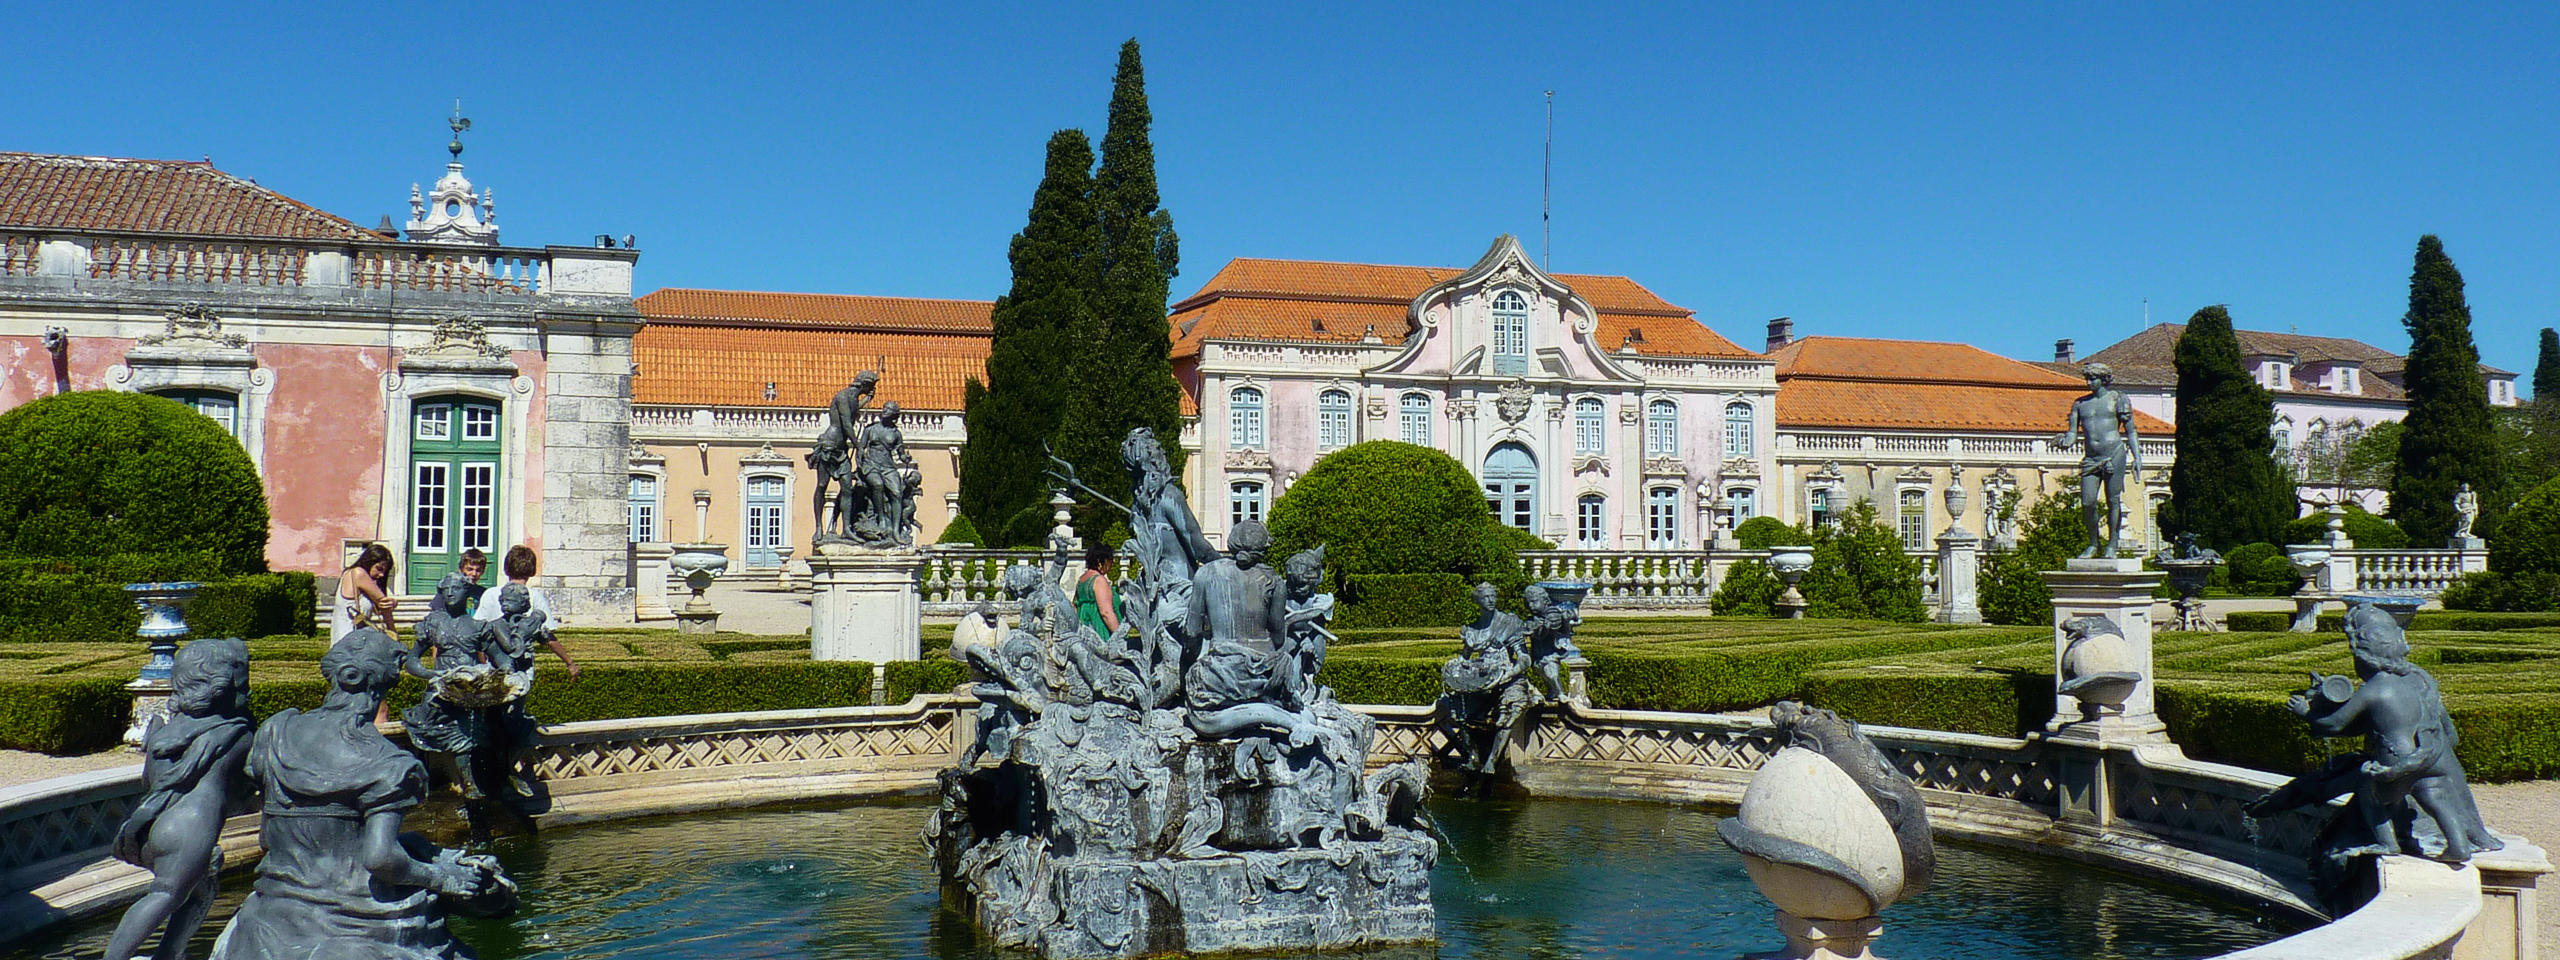 Queluz Palace fountain and garden